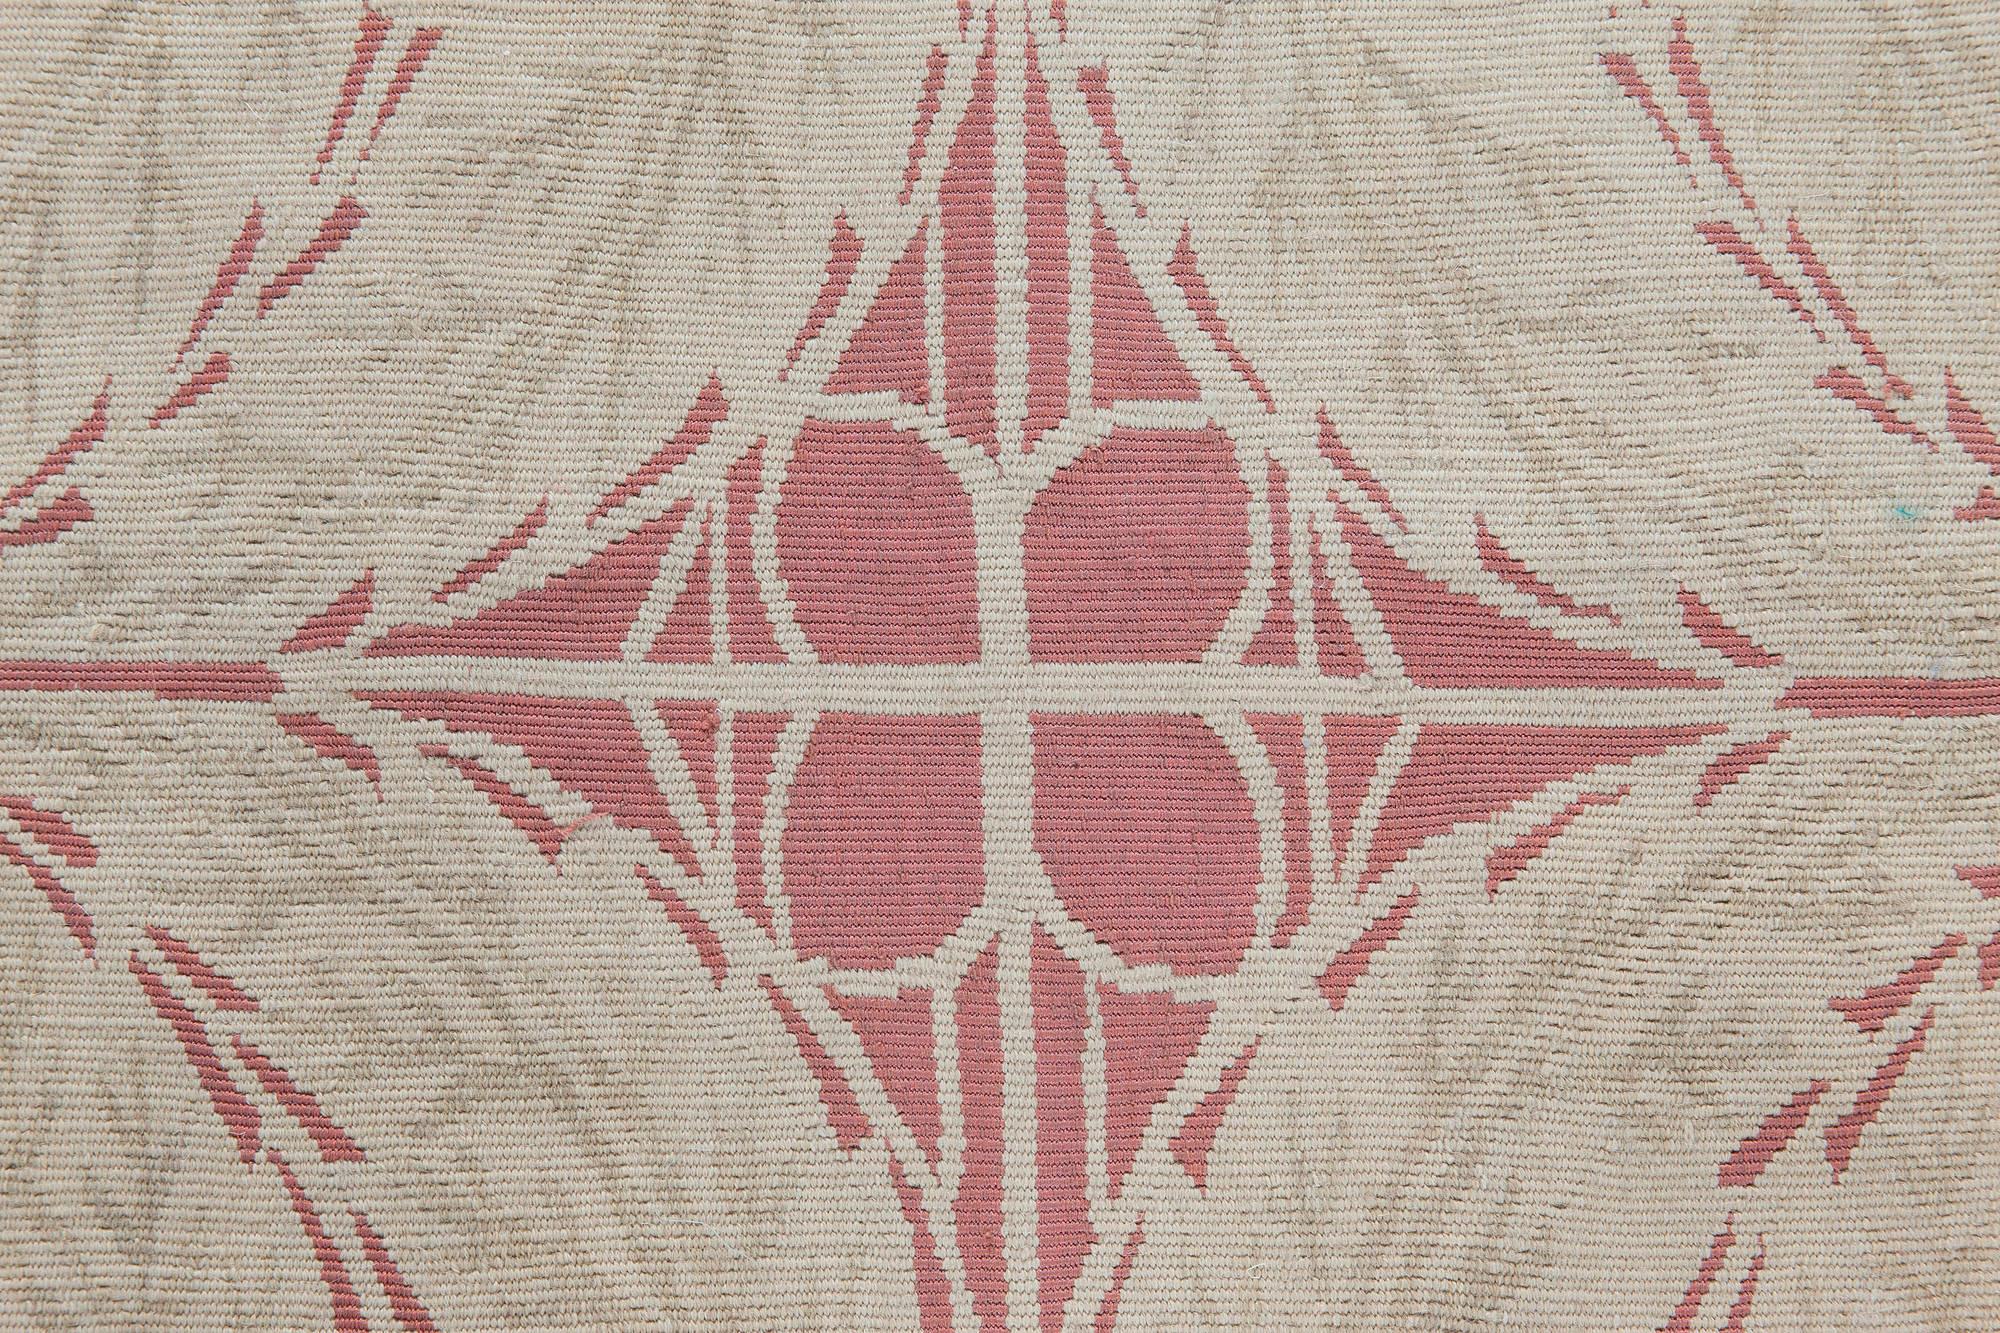 Zeitgenössischer Flachgewebe-Teppich im Wiener Design von Doris Leslie Blau
Größe: 3'10